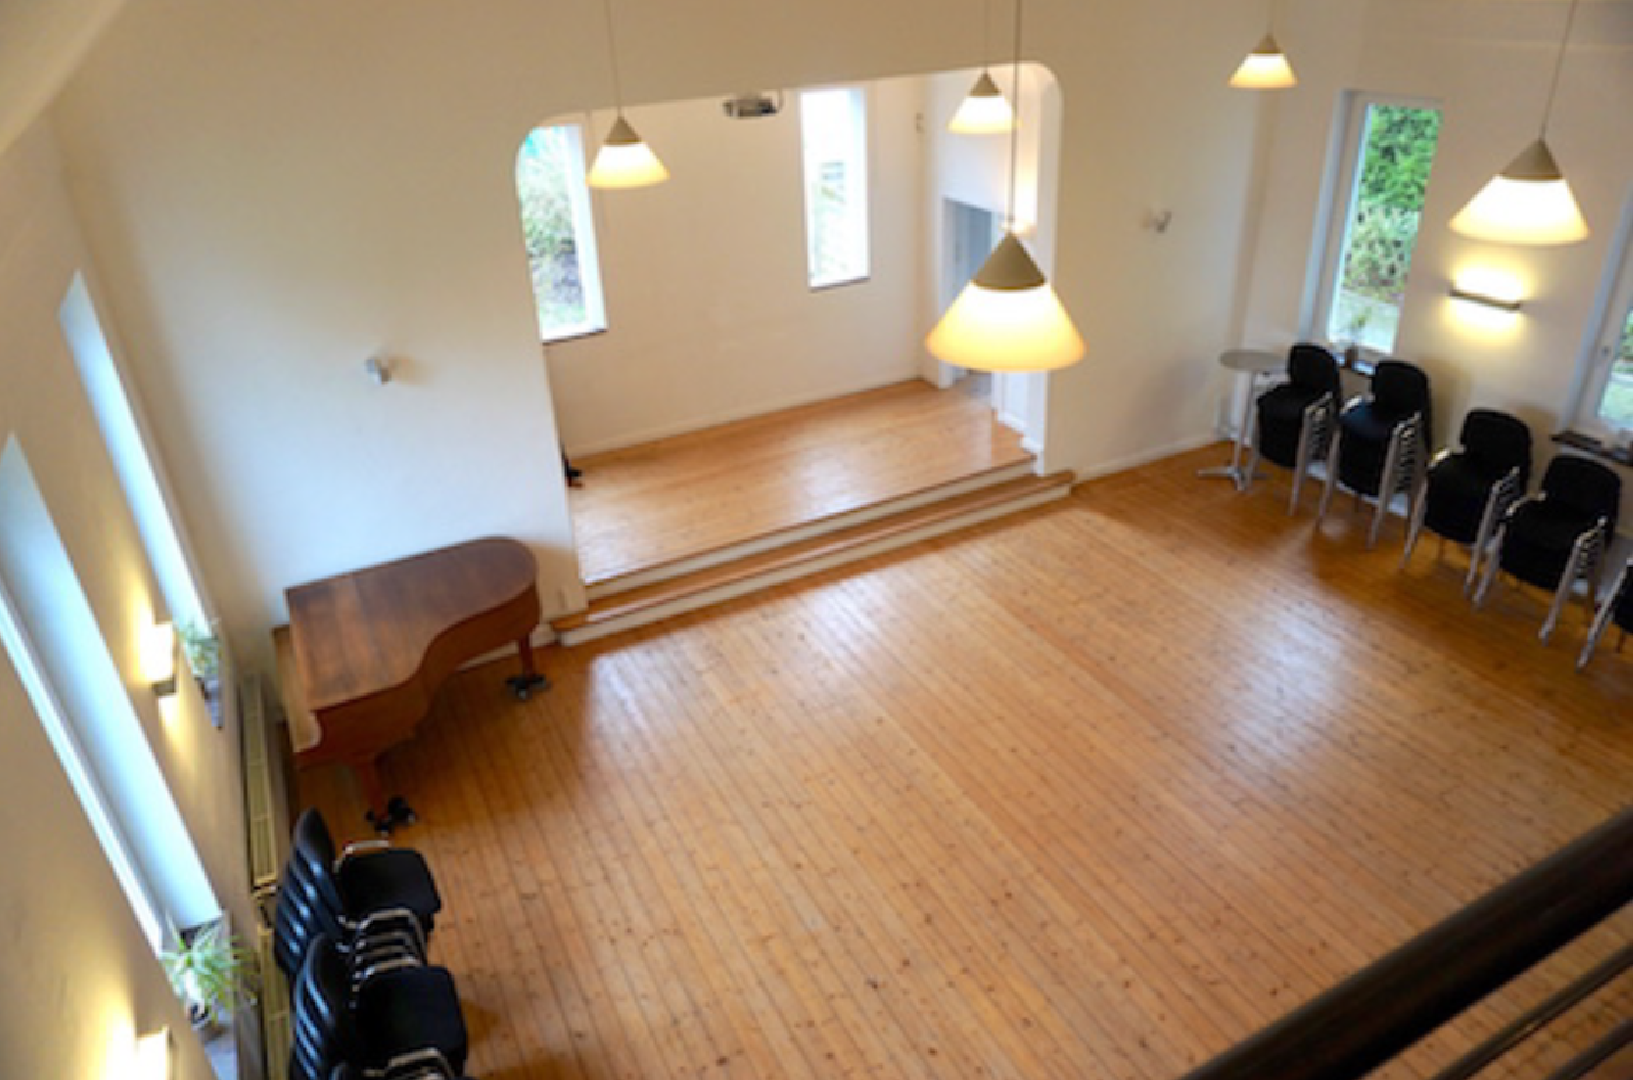 Bild 3 von Haus Wellensiek - Ein Saal mit Atmosphäre